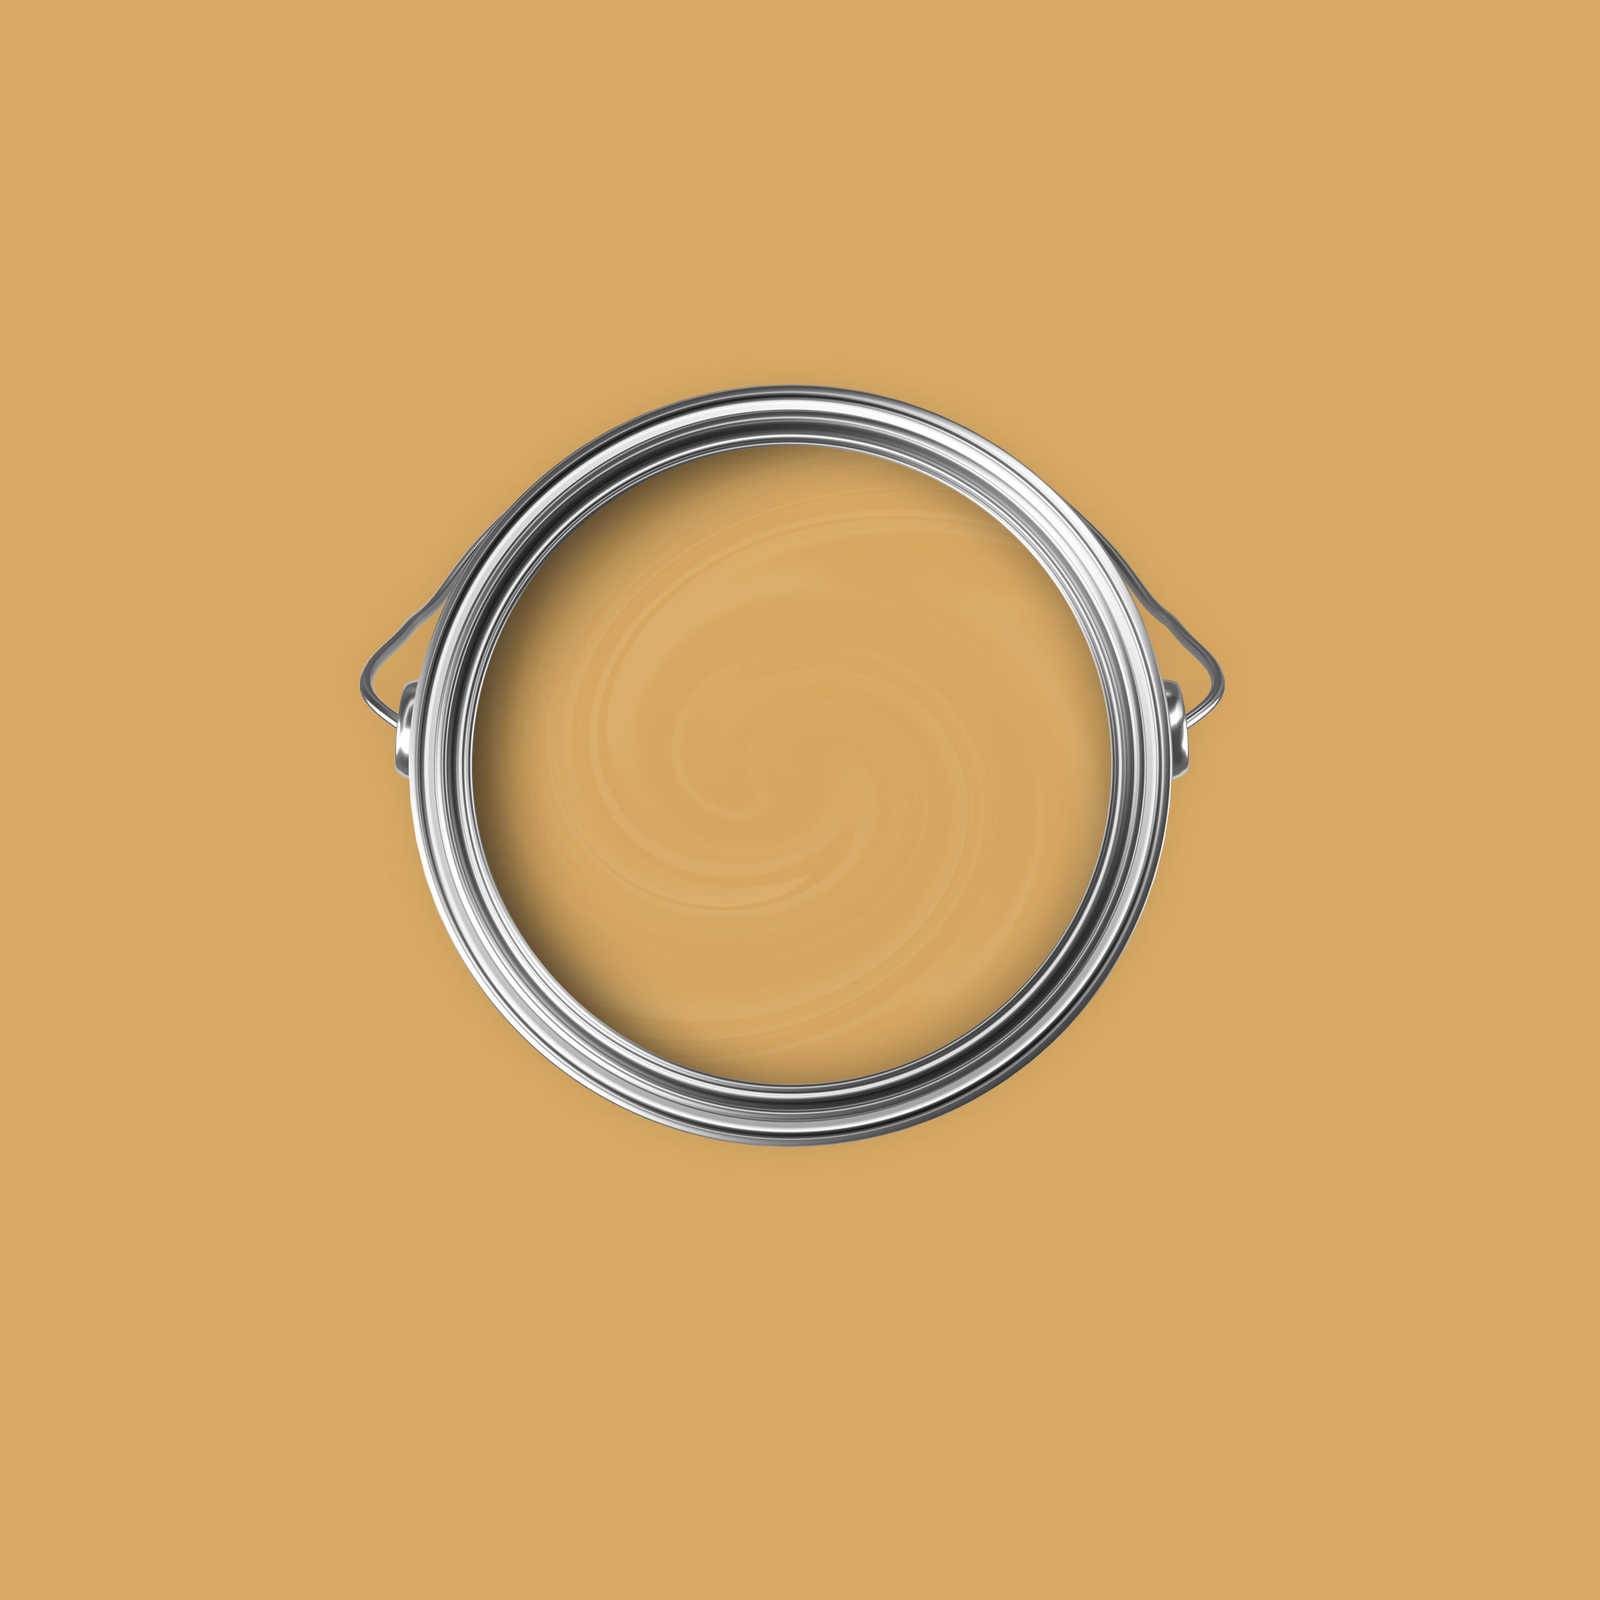             Premium Muurverf Verfrissend Mosterdgeel »Beige Orange/Sassy Saffron« NW812 – 2,5 liter
        